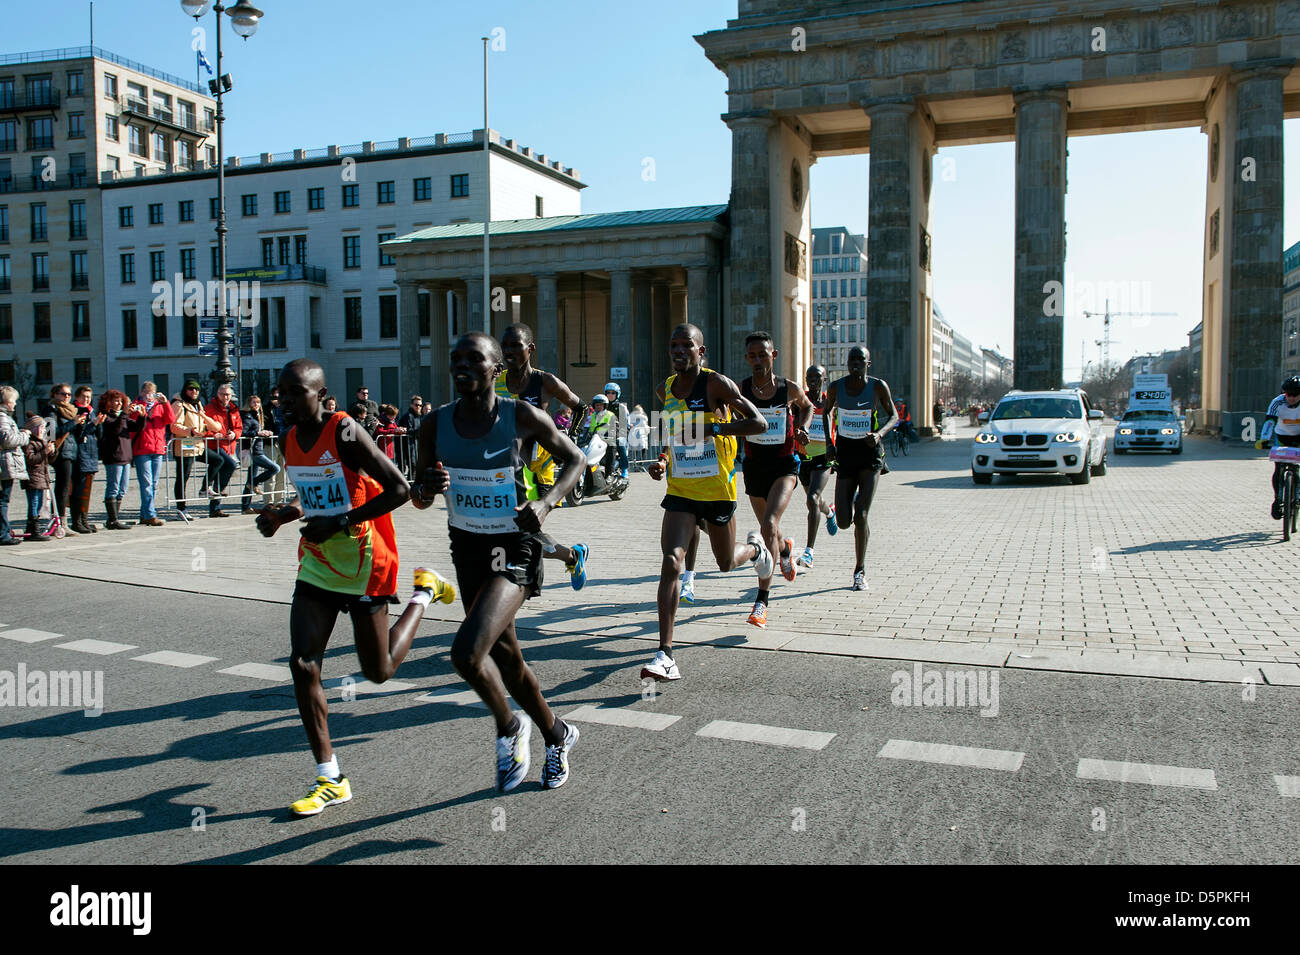 Berlino, Germania. 7 Aprile, 2013. Berlin Half Marathon 2013 con la vittoria in uomini della gara andando a Giacobbe keniota Kendagor 59:11 minuti in 1a, e 2a di Silas Kipruto con 59:31 minuti e 3 al Victor Kipchirchir con 59:39 minuti. La gara femminile è andato in Kenya, con Chelea Kiprop vincente (1:07:54), 2 files Ongori (1:08:01) e terza Mai Ito (1:10:00) dal Giappone. Credito: © Gonçalo Silva/Linea Alamy News. Foto Stock